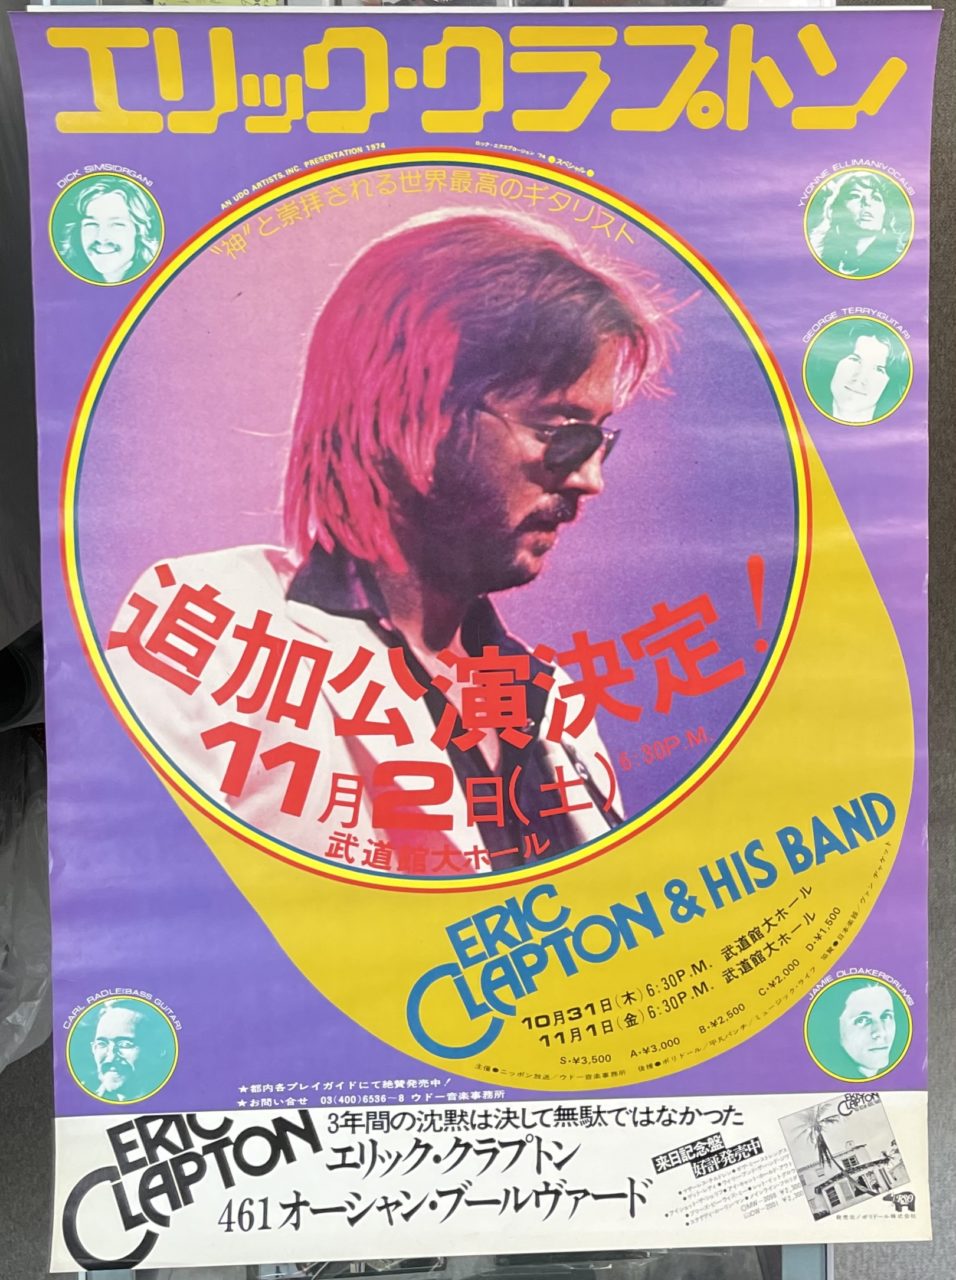 エリック・クラプトン 1974年 コンサート告知ポスター 武道館 Eric